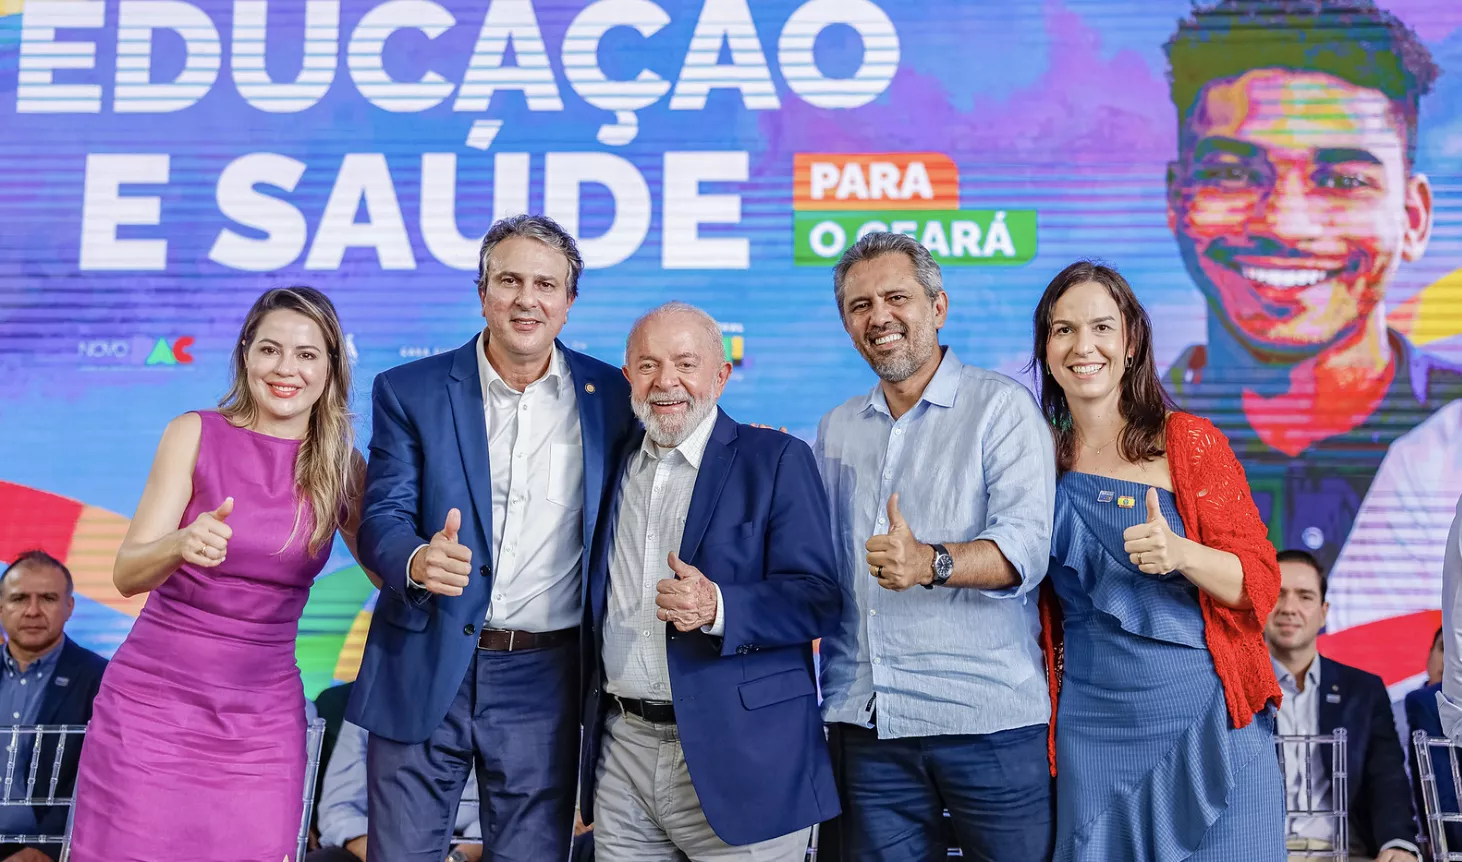 Presidente Luiz Inácio Lula da Silva durante a cerimônia de anúncios de investimentos para as instituições federais de educação do Ceará, no Palácio da Abolição, em Fortaleza - CE